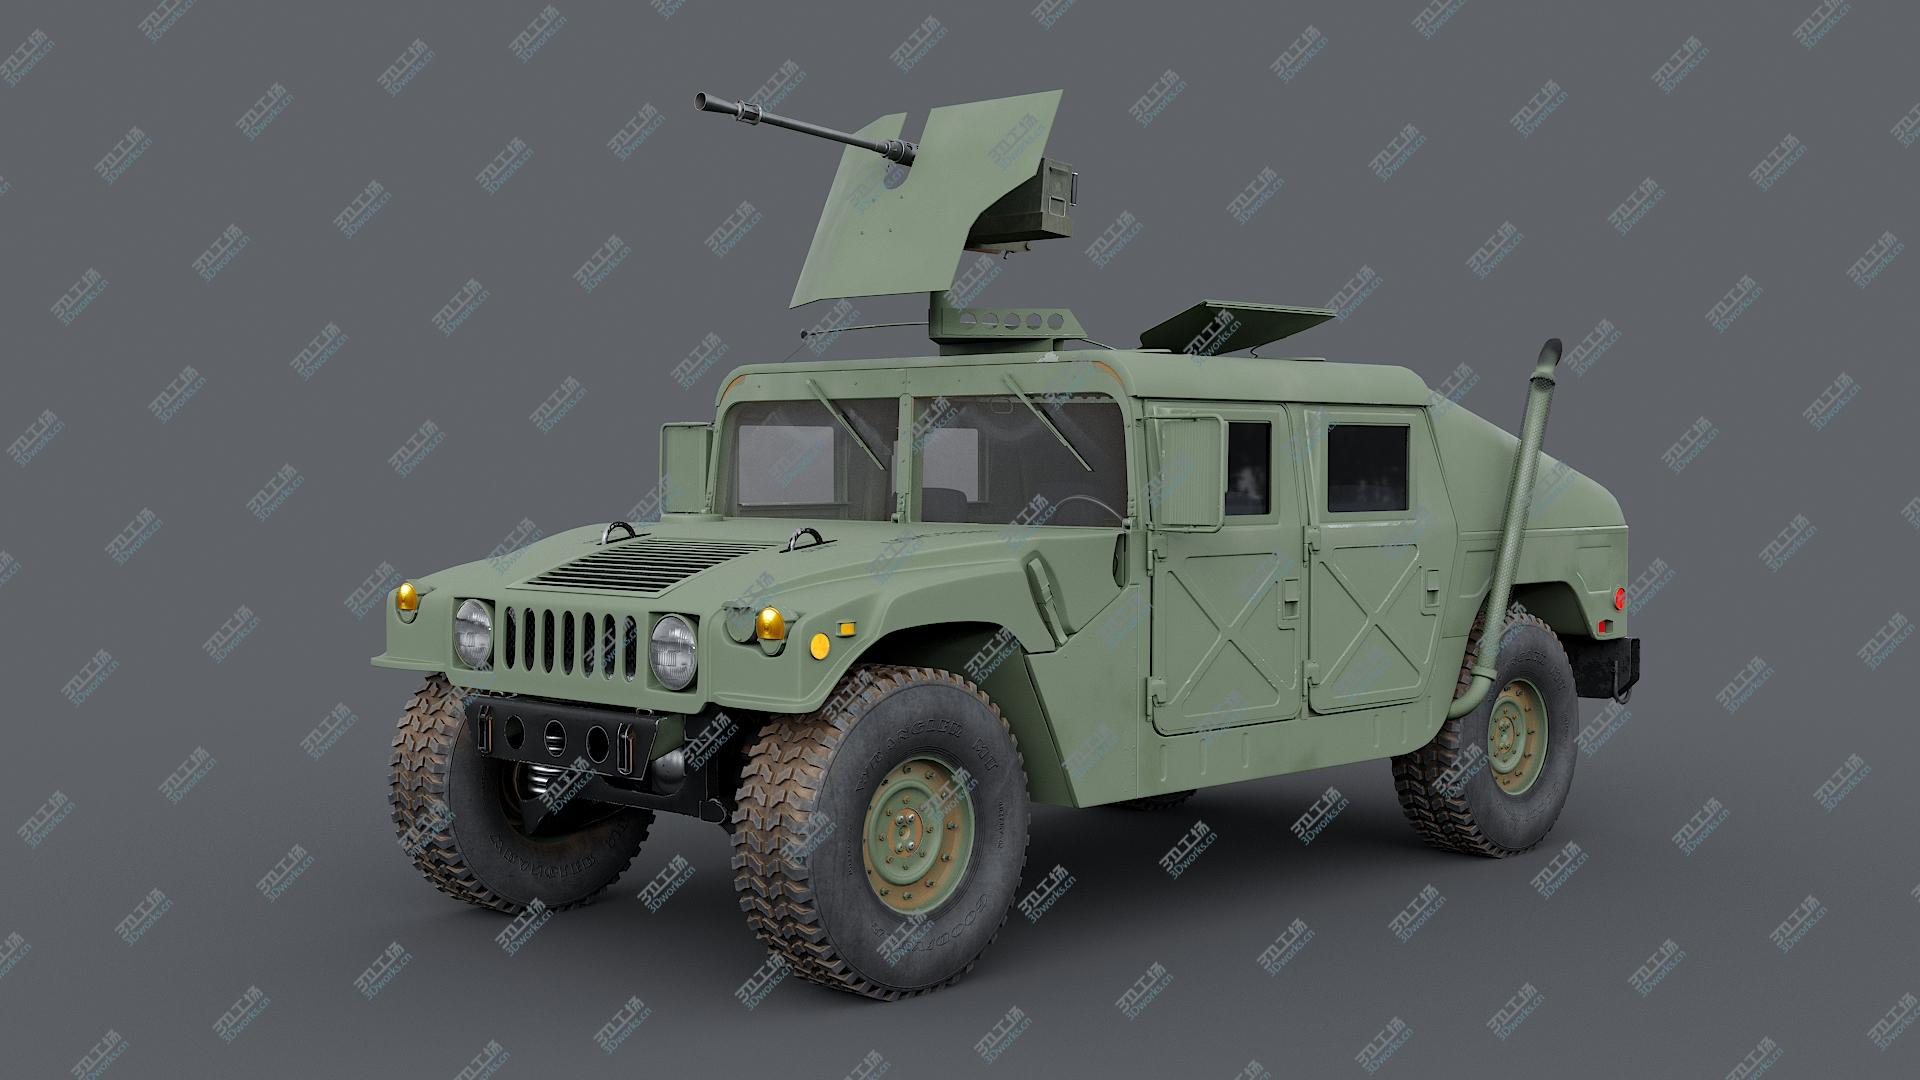 images/goods_img/202105071/3D Humvee M998 M1025 Weapons Carrier Slant Back/1.jpg